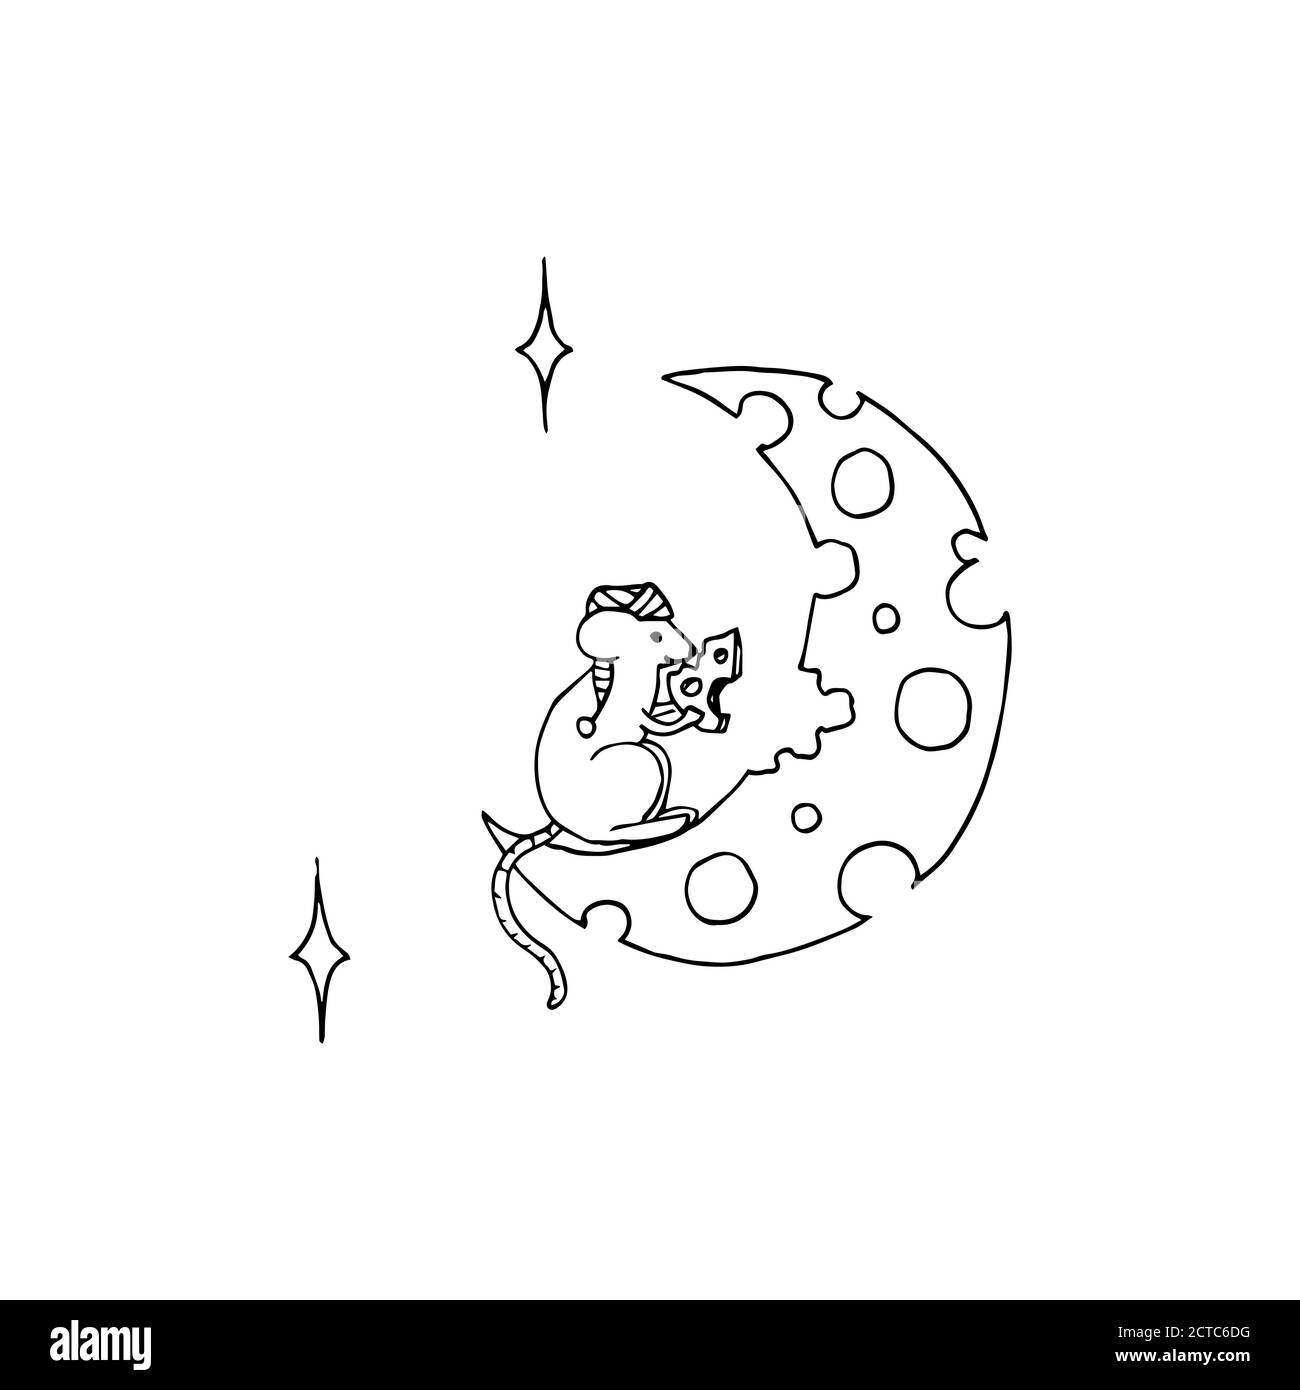 Immagine vettoriale di carino topo che mangia luna a forma di formaggio. Tatuaggio cartoon bianco e nero Illustrazione Vettoriale